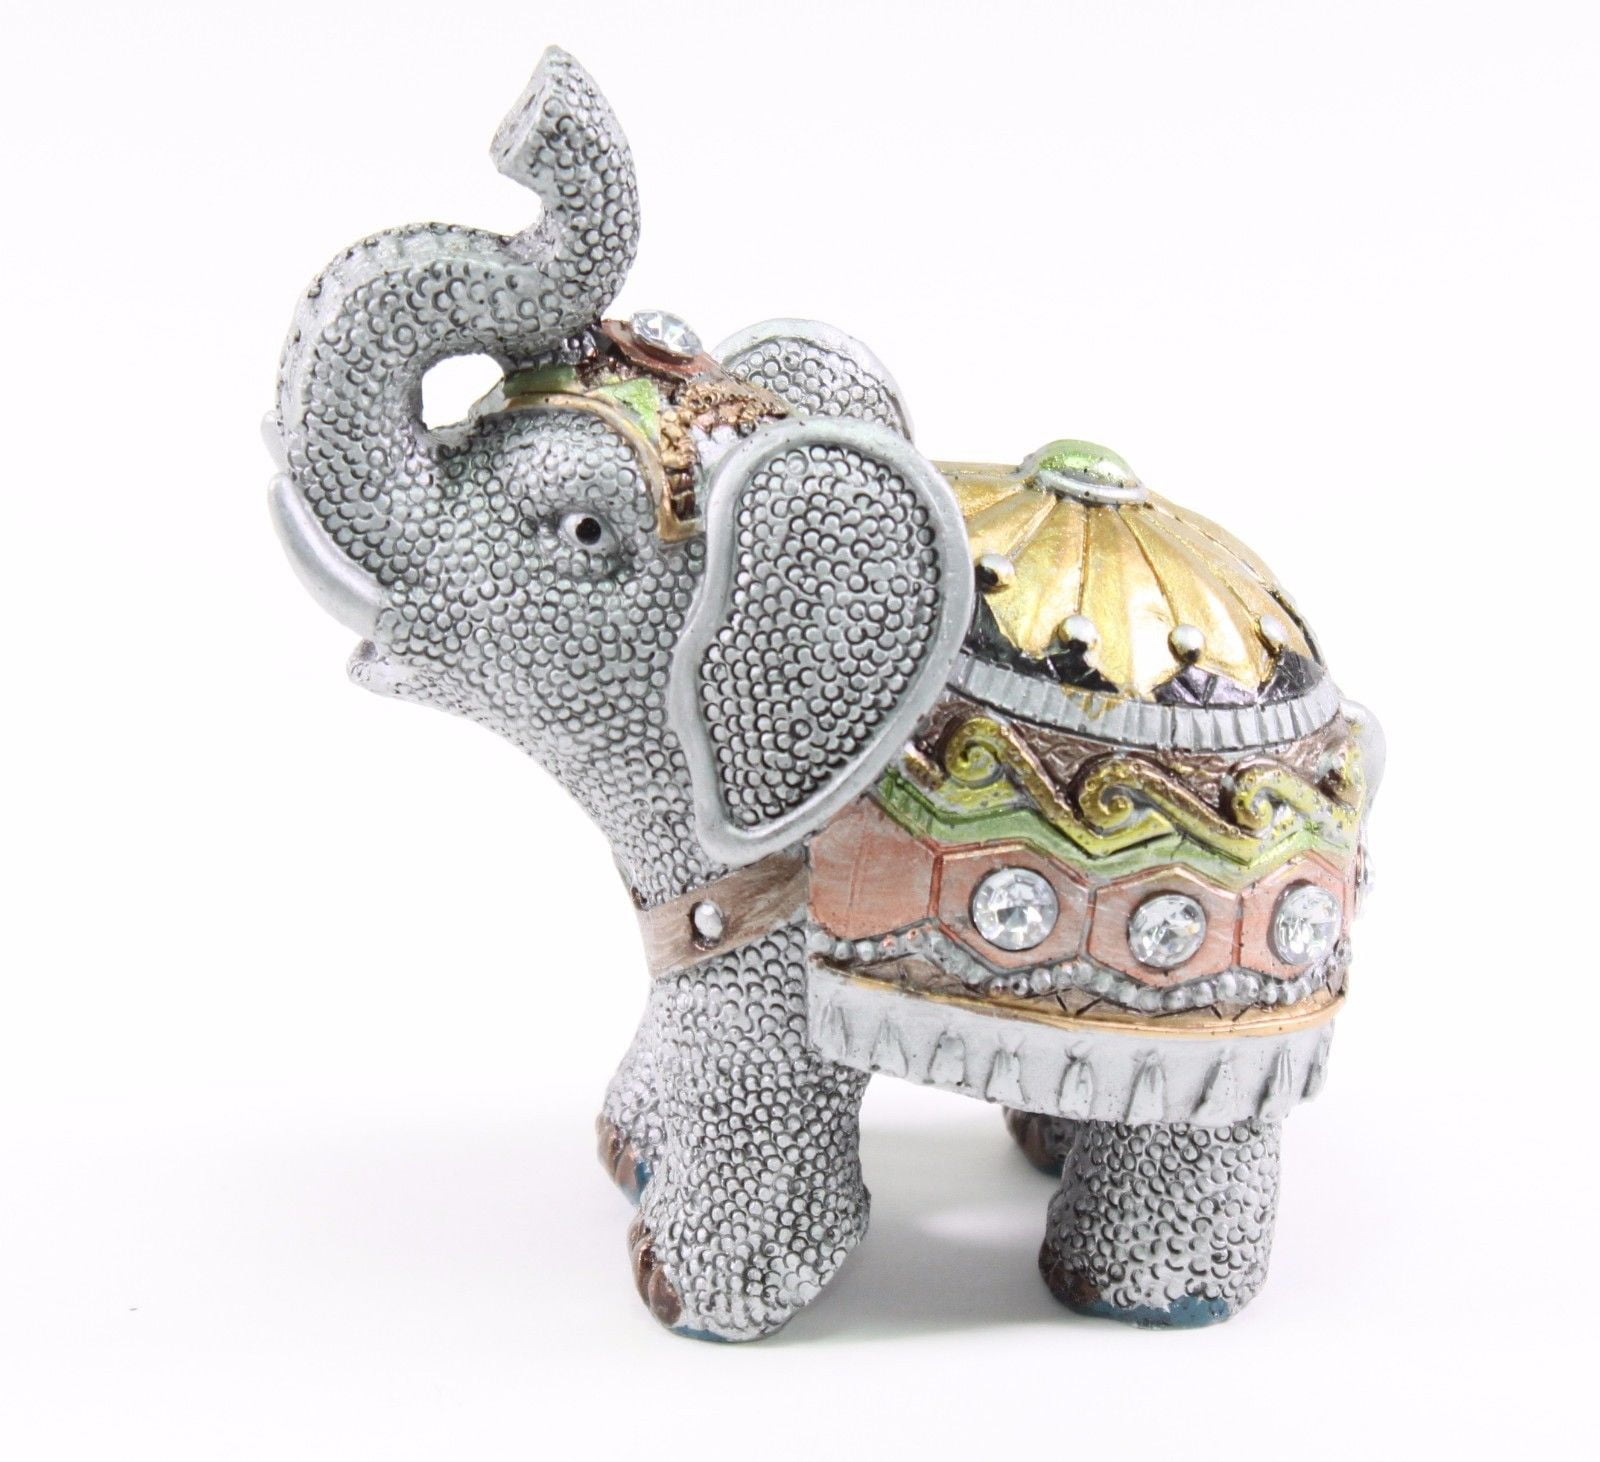 Feng Shui 4.25" Gray Elephant Figurine Wealth Lucky Figurine Gift & Home Decor 